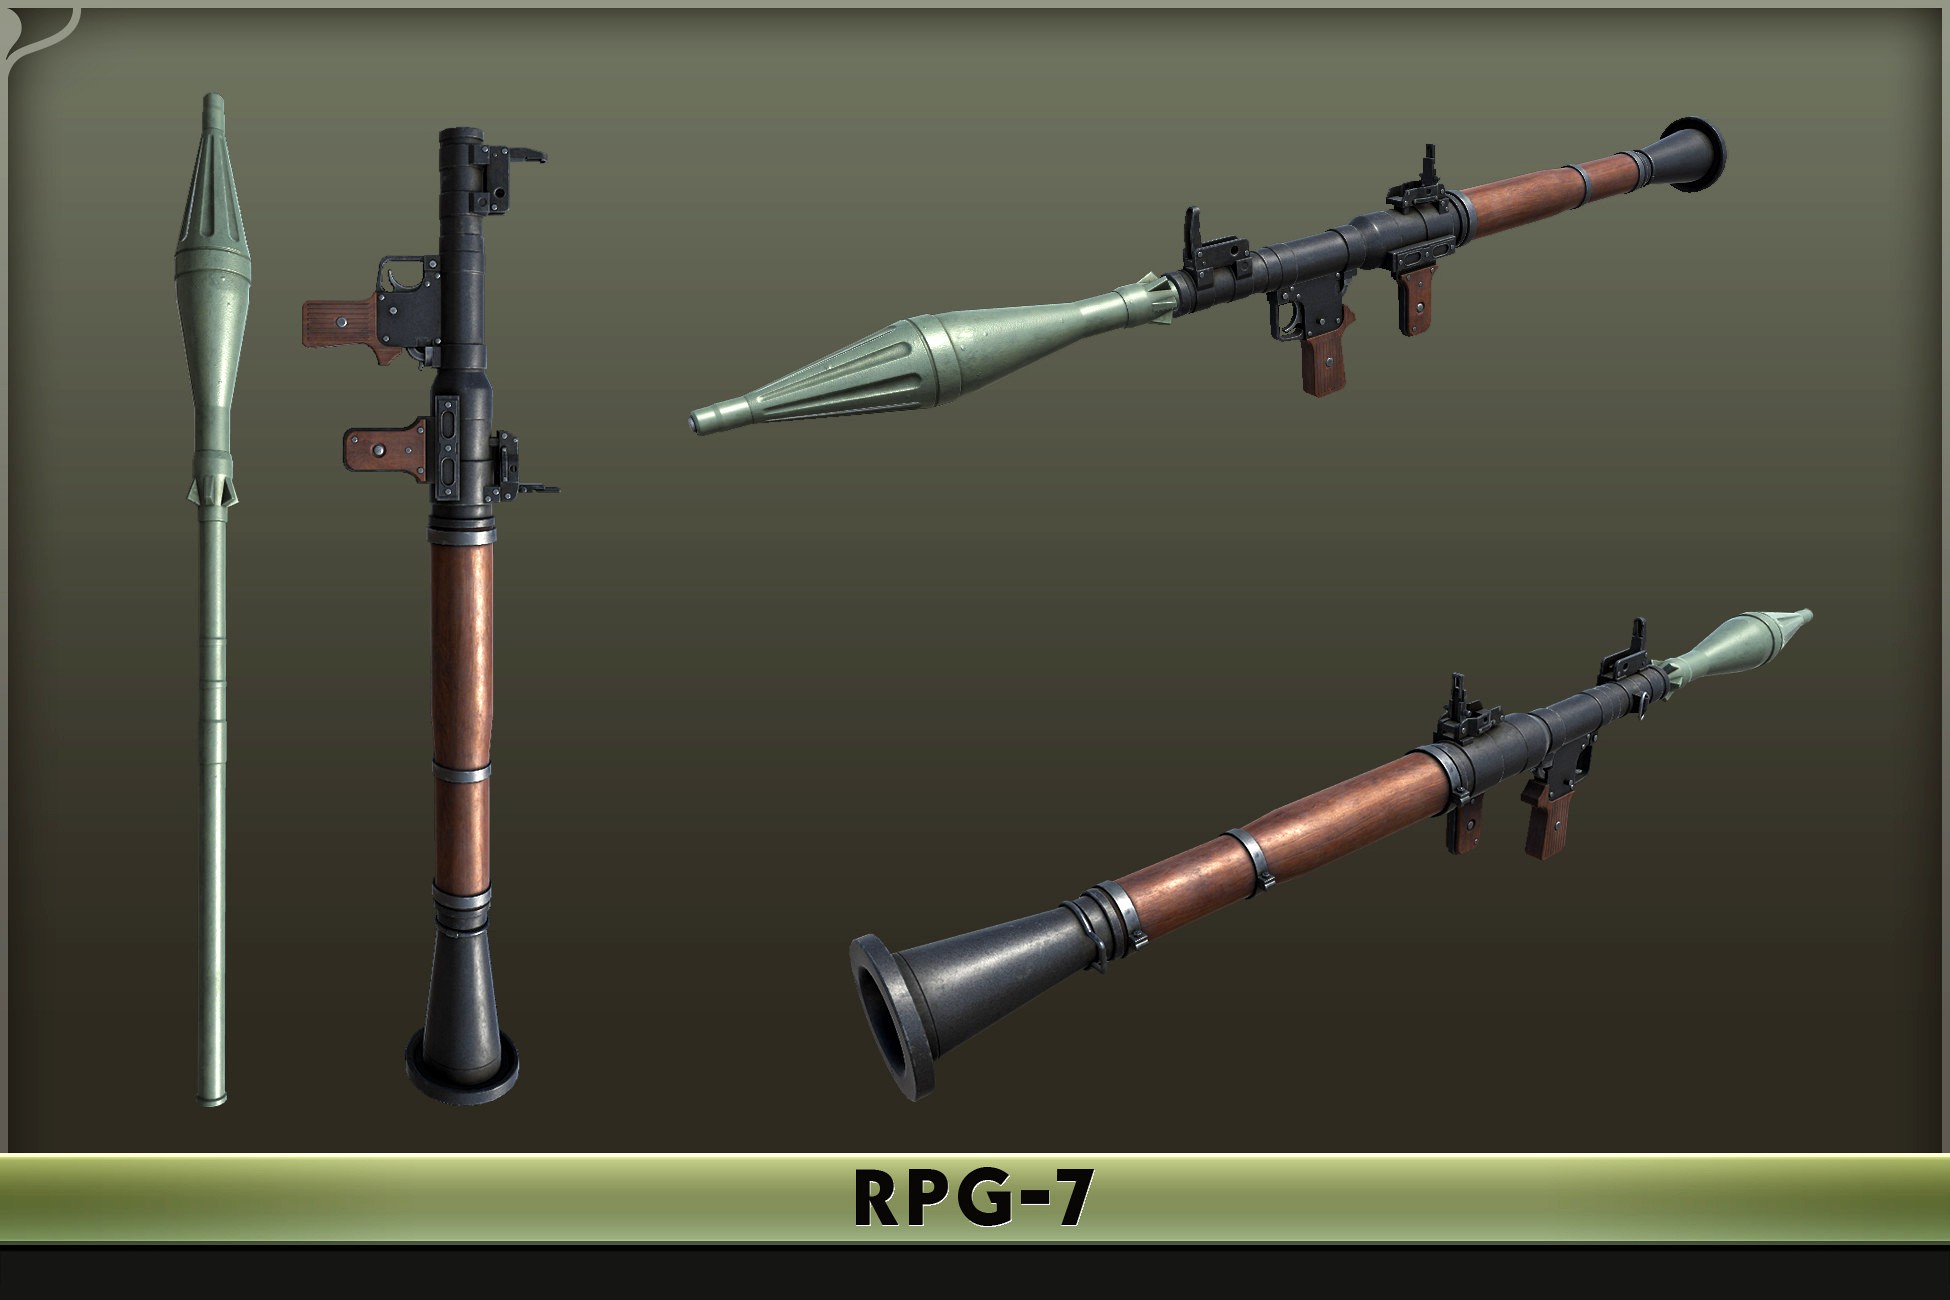 RPG-7 Grenade Launcher